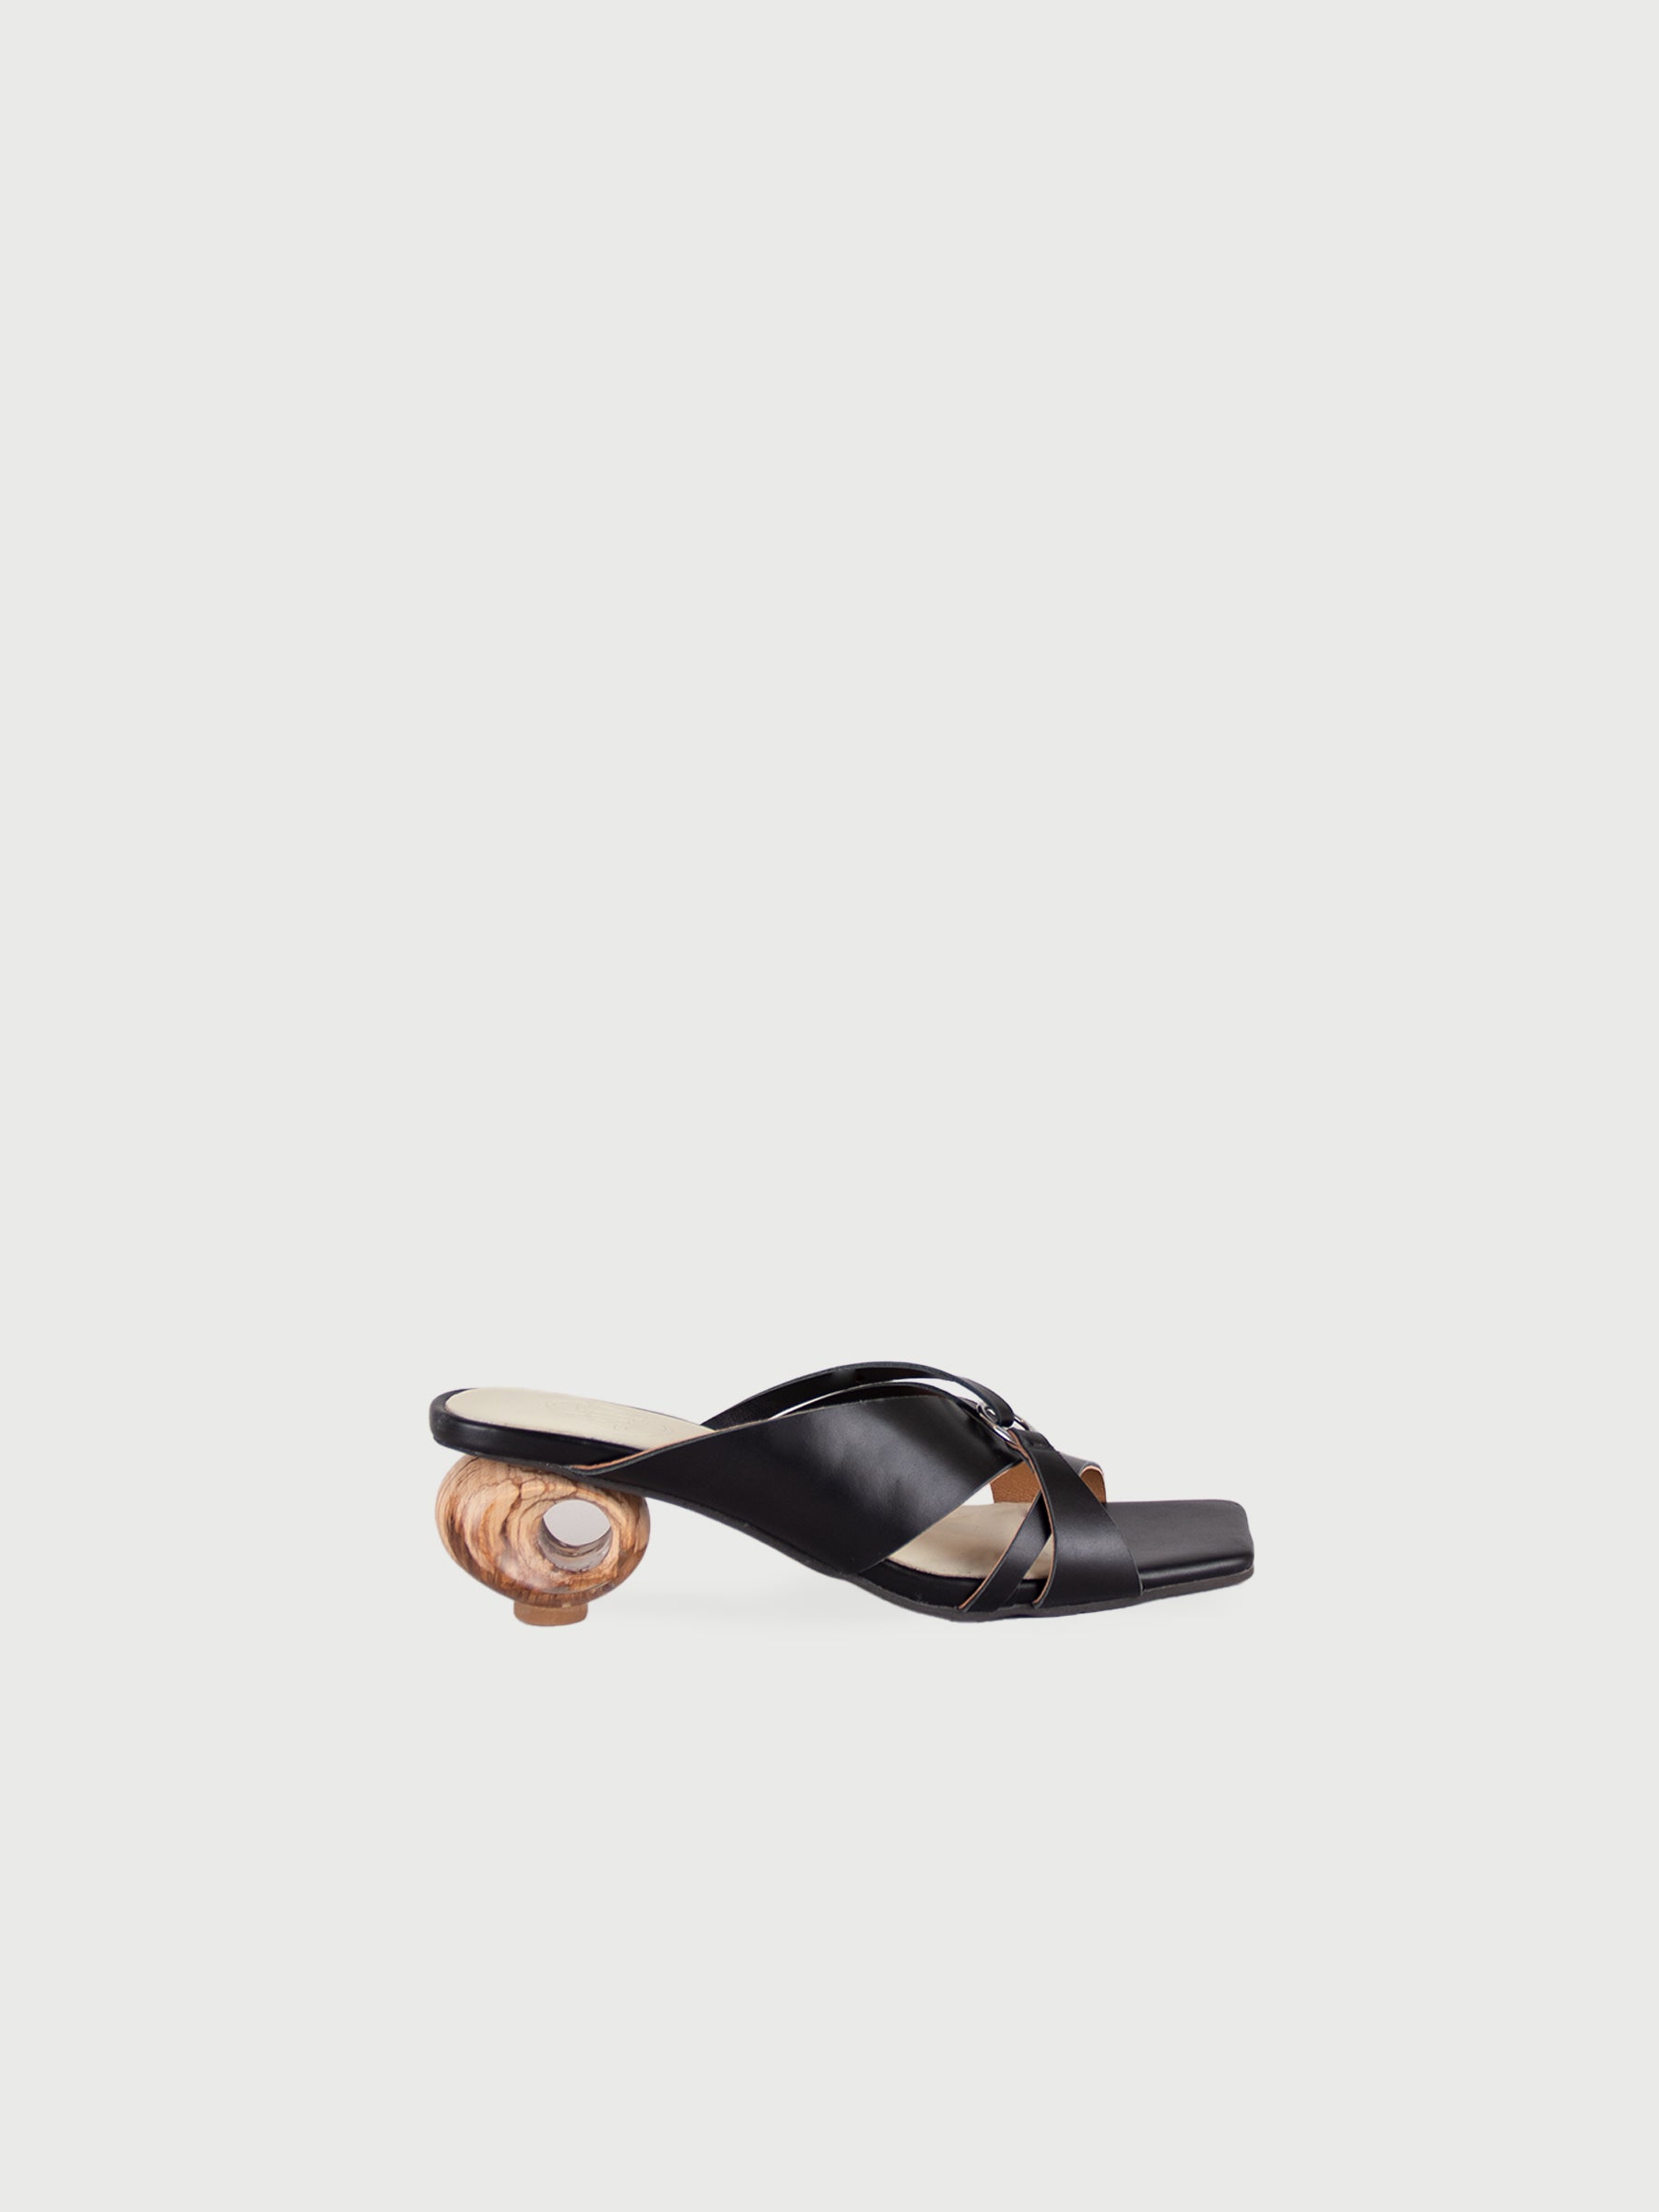 Vanya 𖠁 Crossover Strap Ground Hollow Heel Sandals